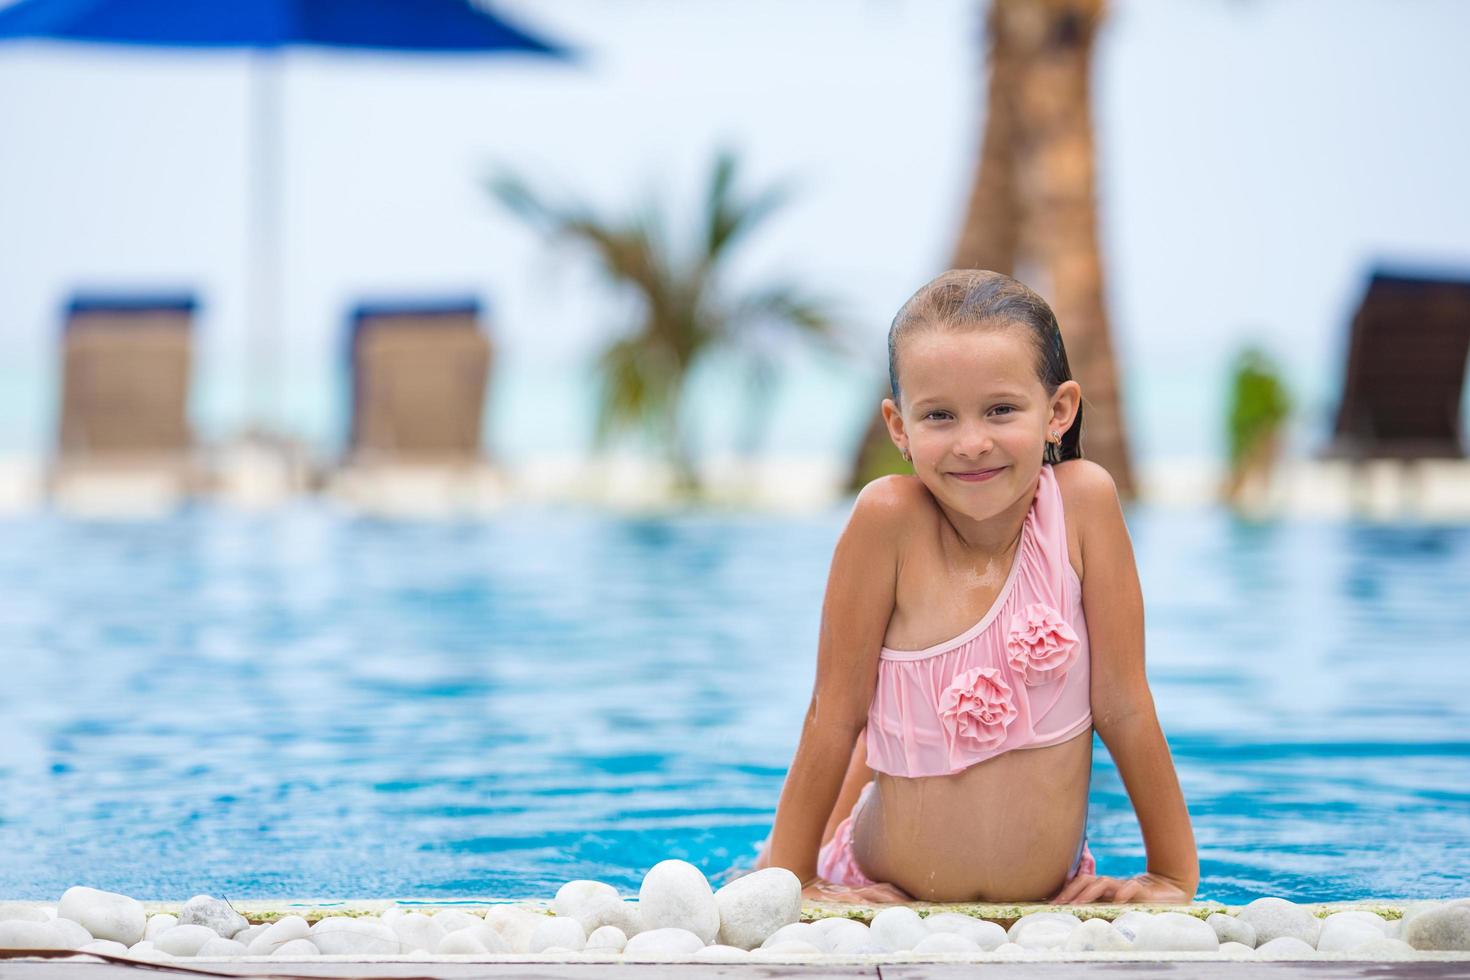 Girl having fun in an outdoor swimming pool photo